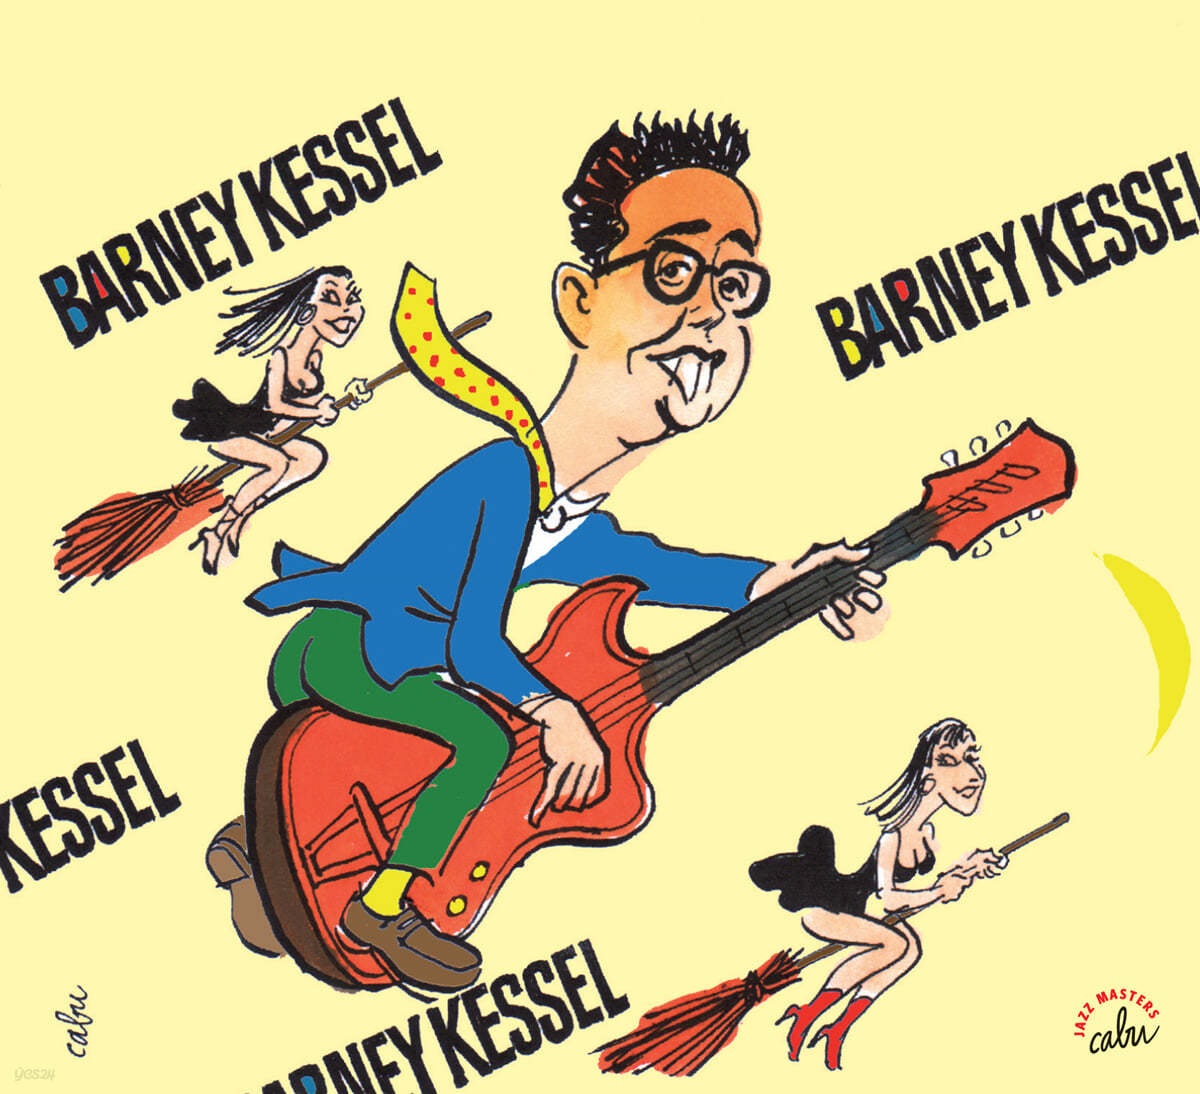 일러스트로 만나는 바니 케셀 (Barney Kessel Illustrated by CABU) 